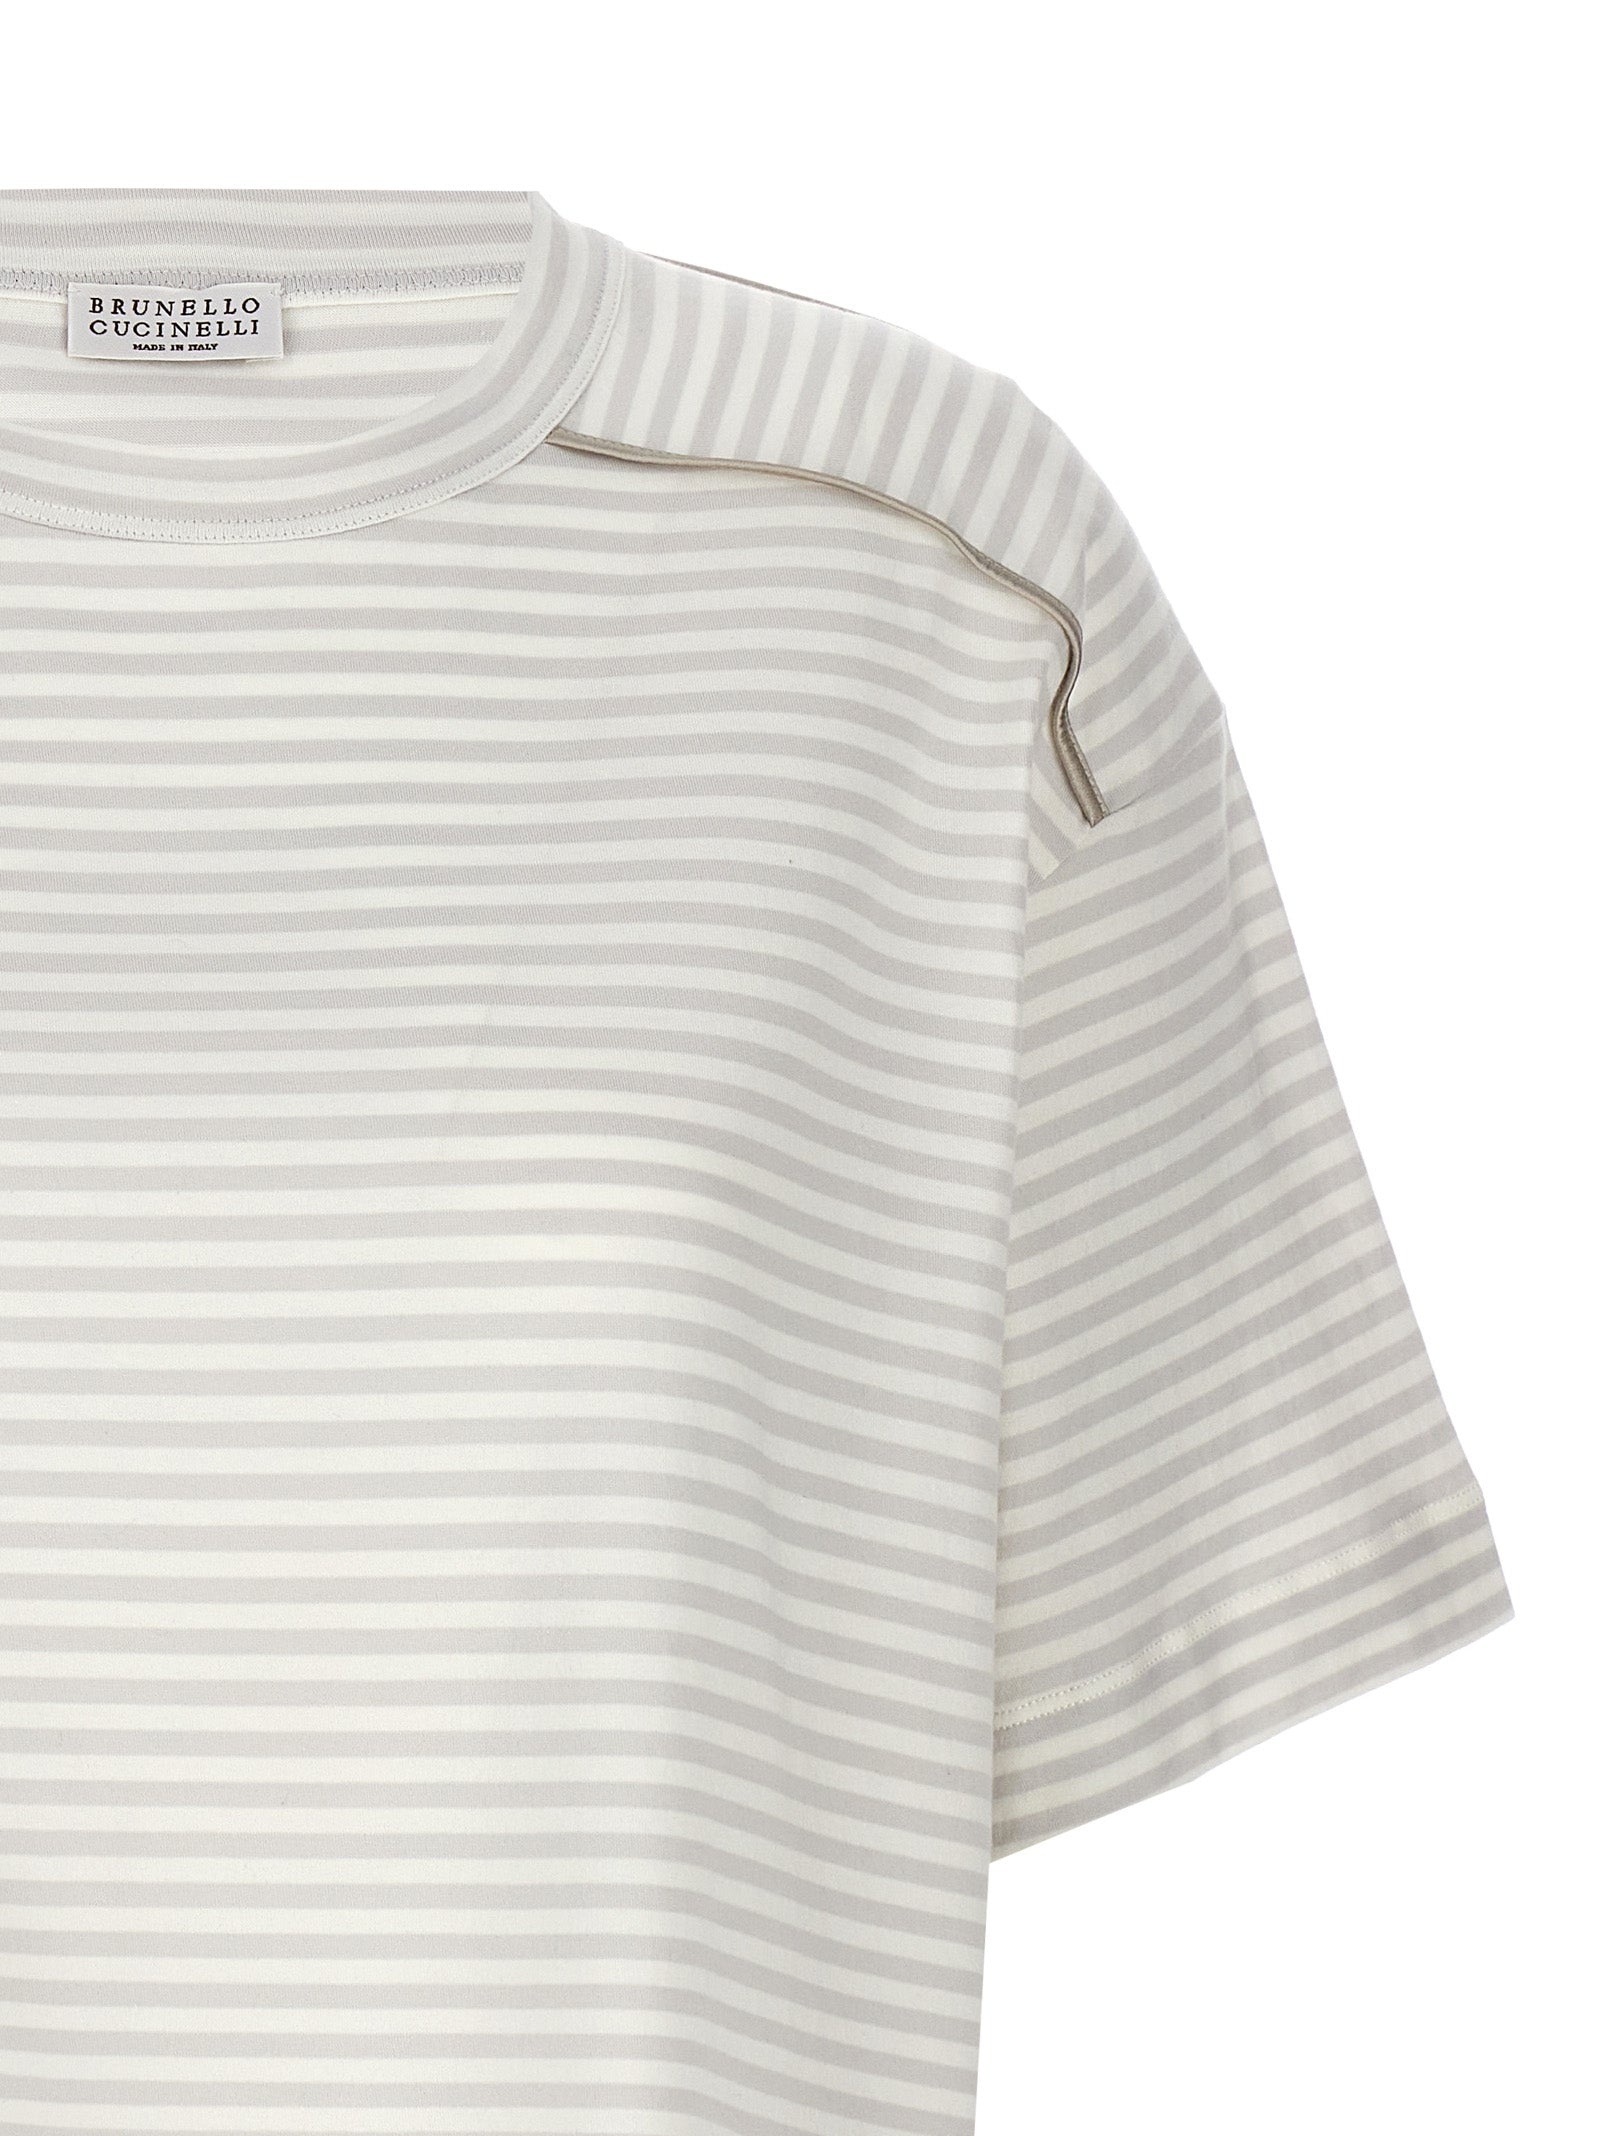 Shop Brunello Cucinelli Striped T-shirt Multicolor